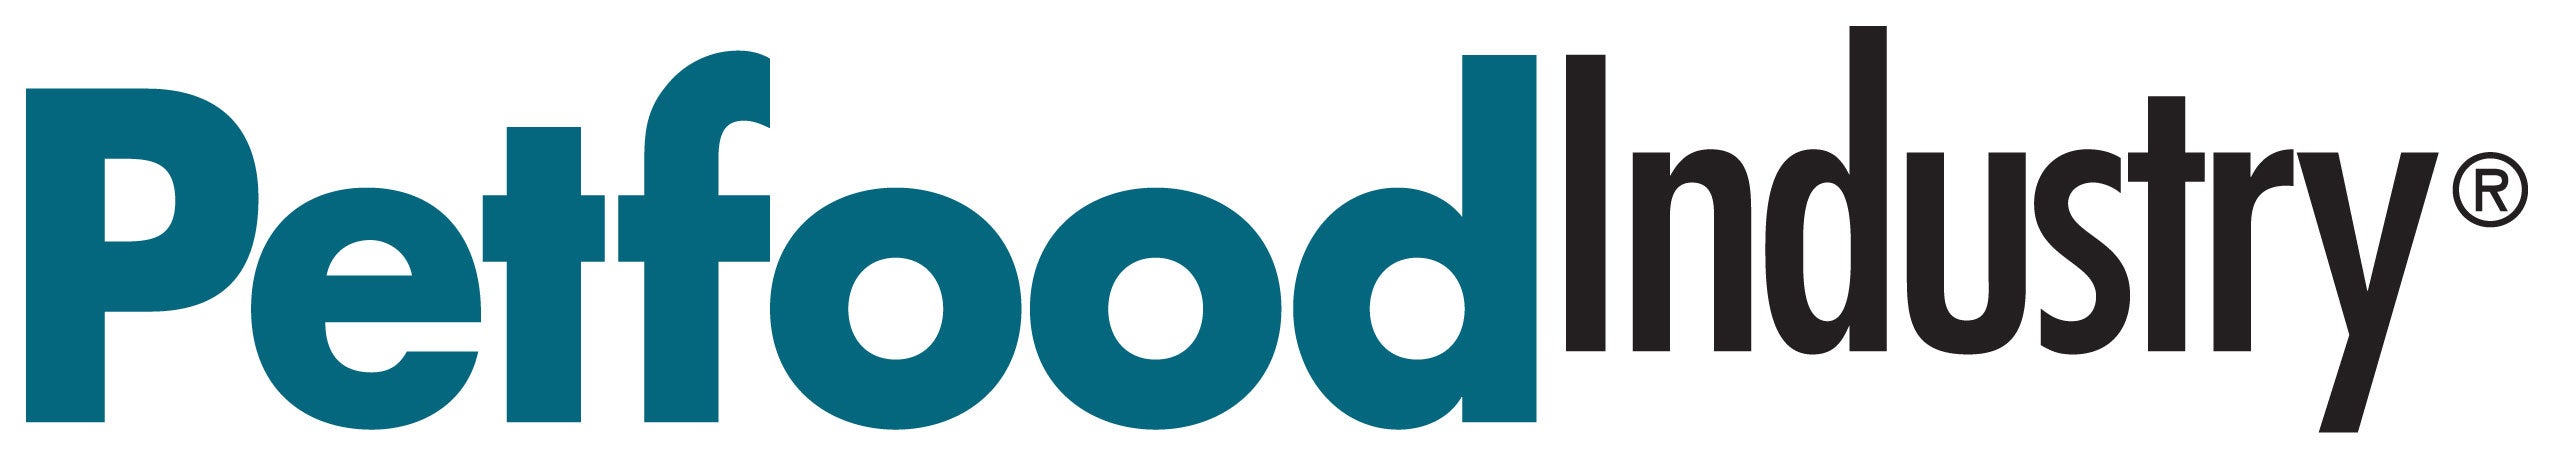 petfood industry logo